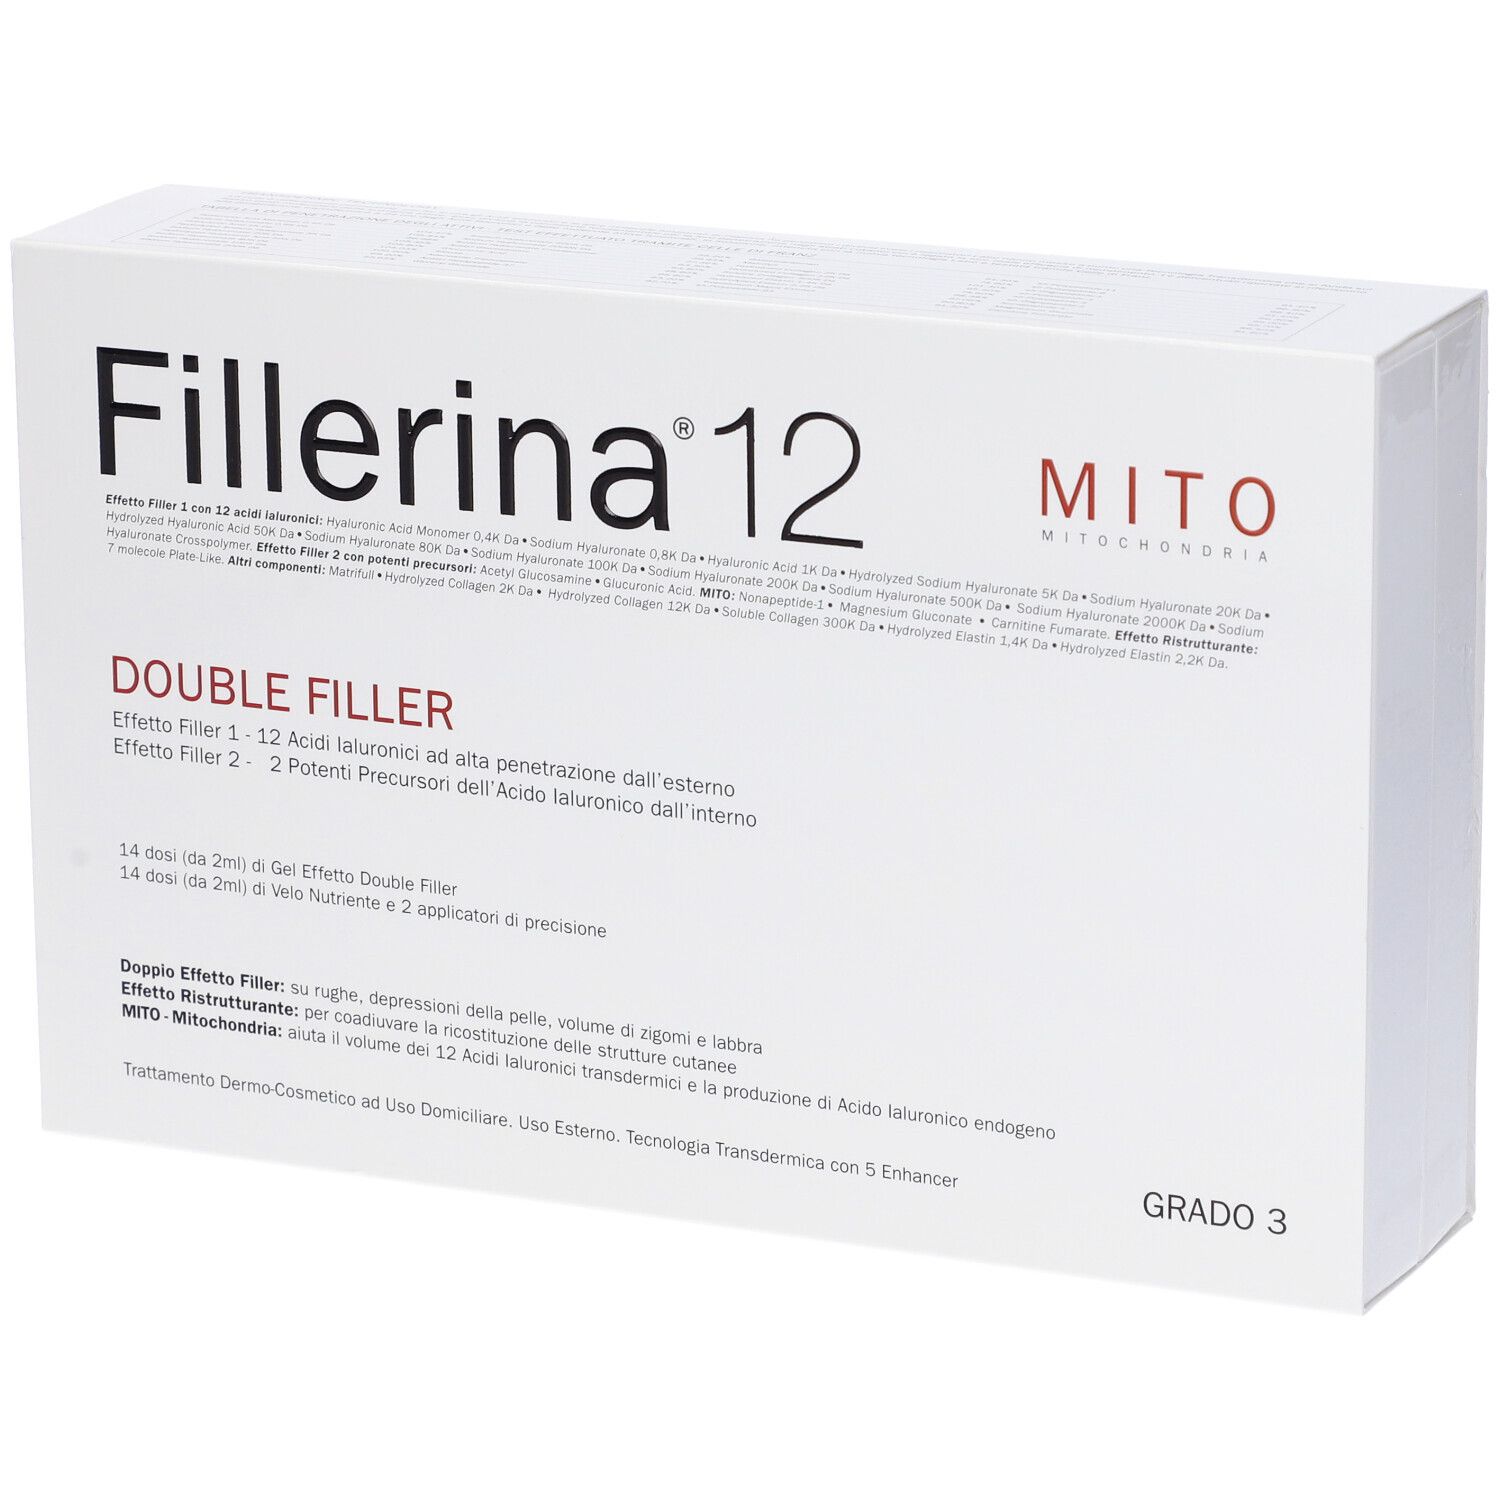 Fillerina 12 Double Filler Mito Base Grado 3